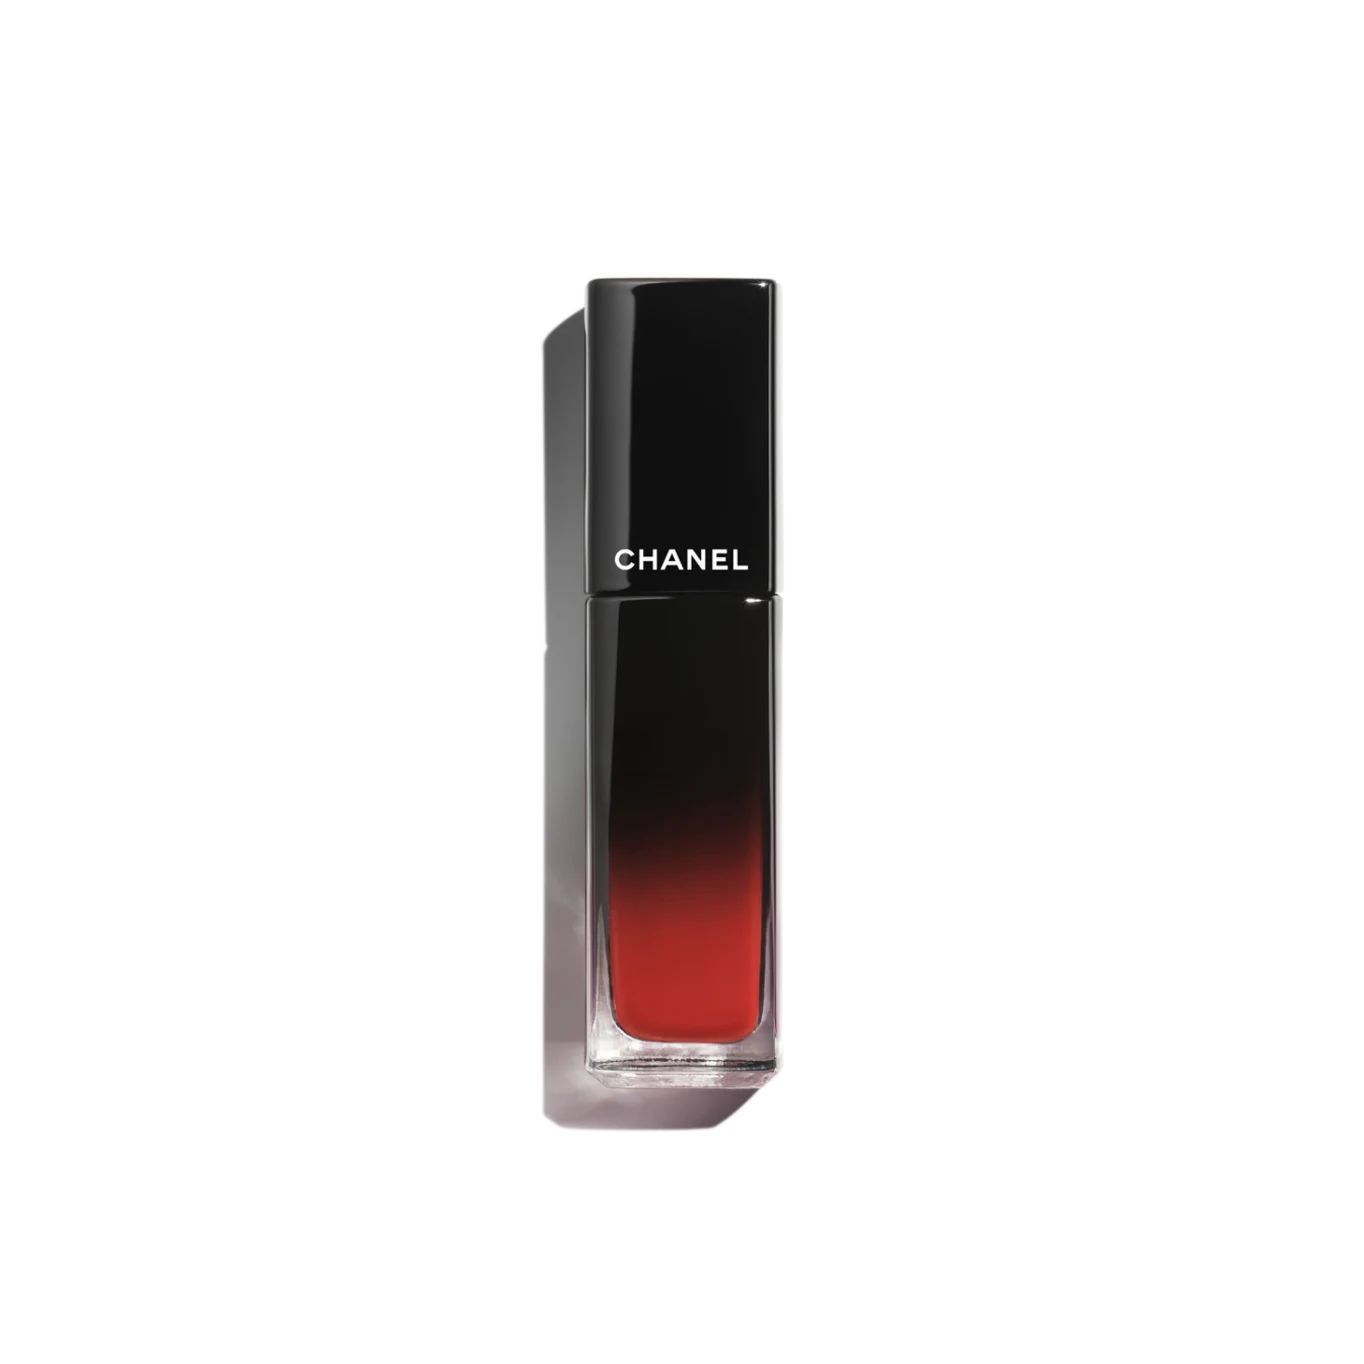 ROUGE ALLURE LAQUE Ultrawear shine liquid lip colour 93 - Sea star | CHANEL | Chanel, Inc. (US)